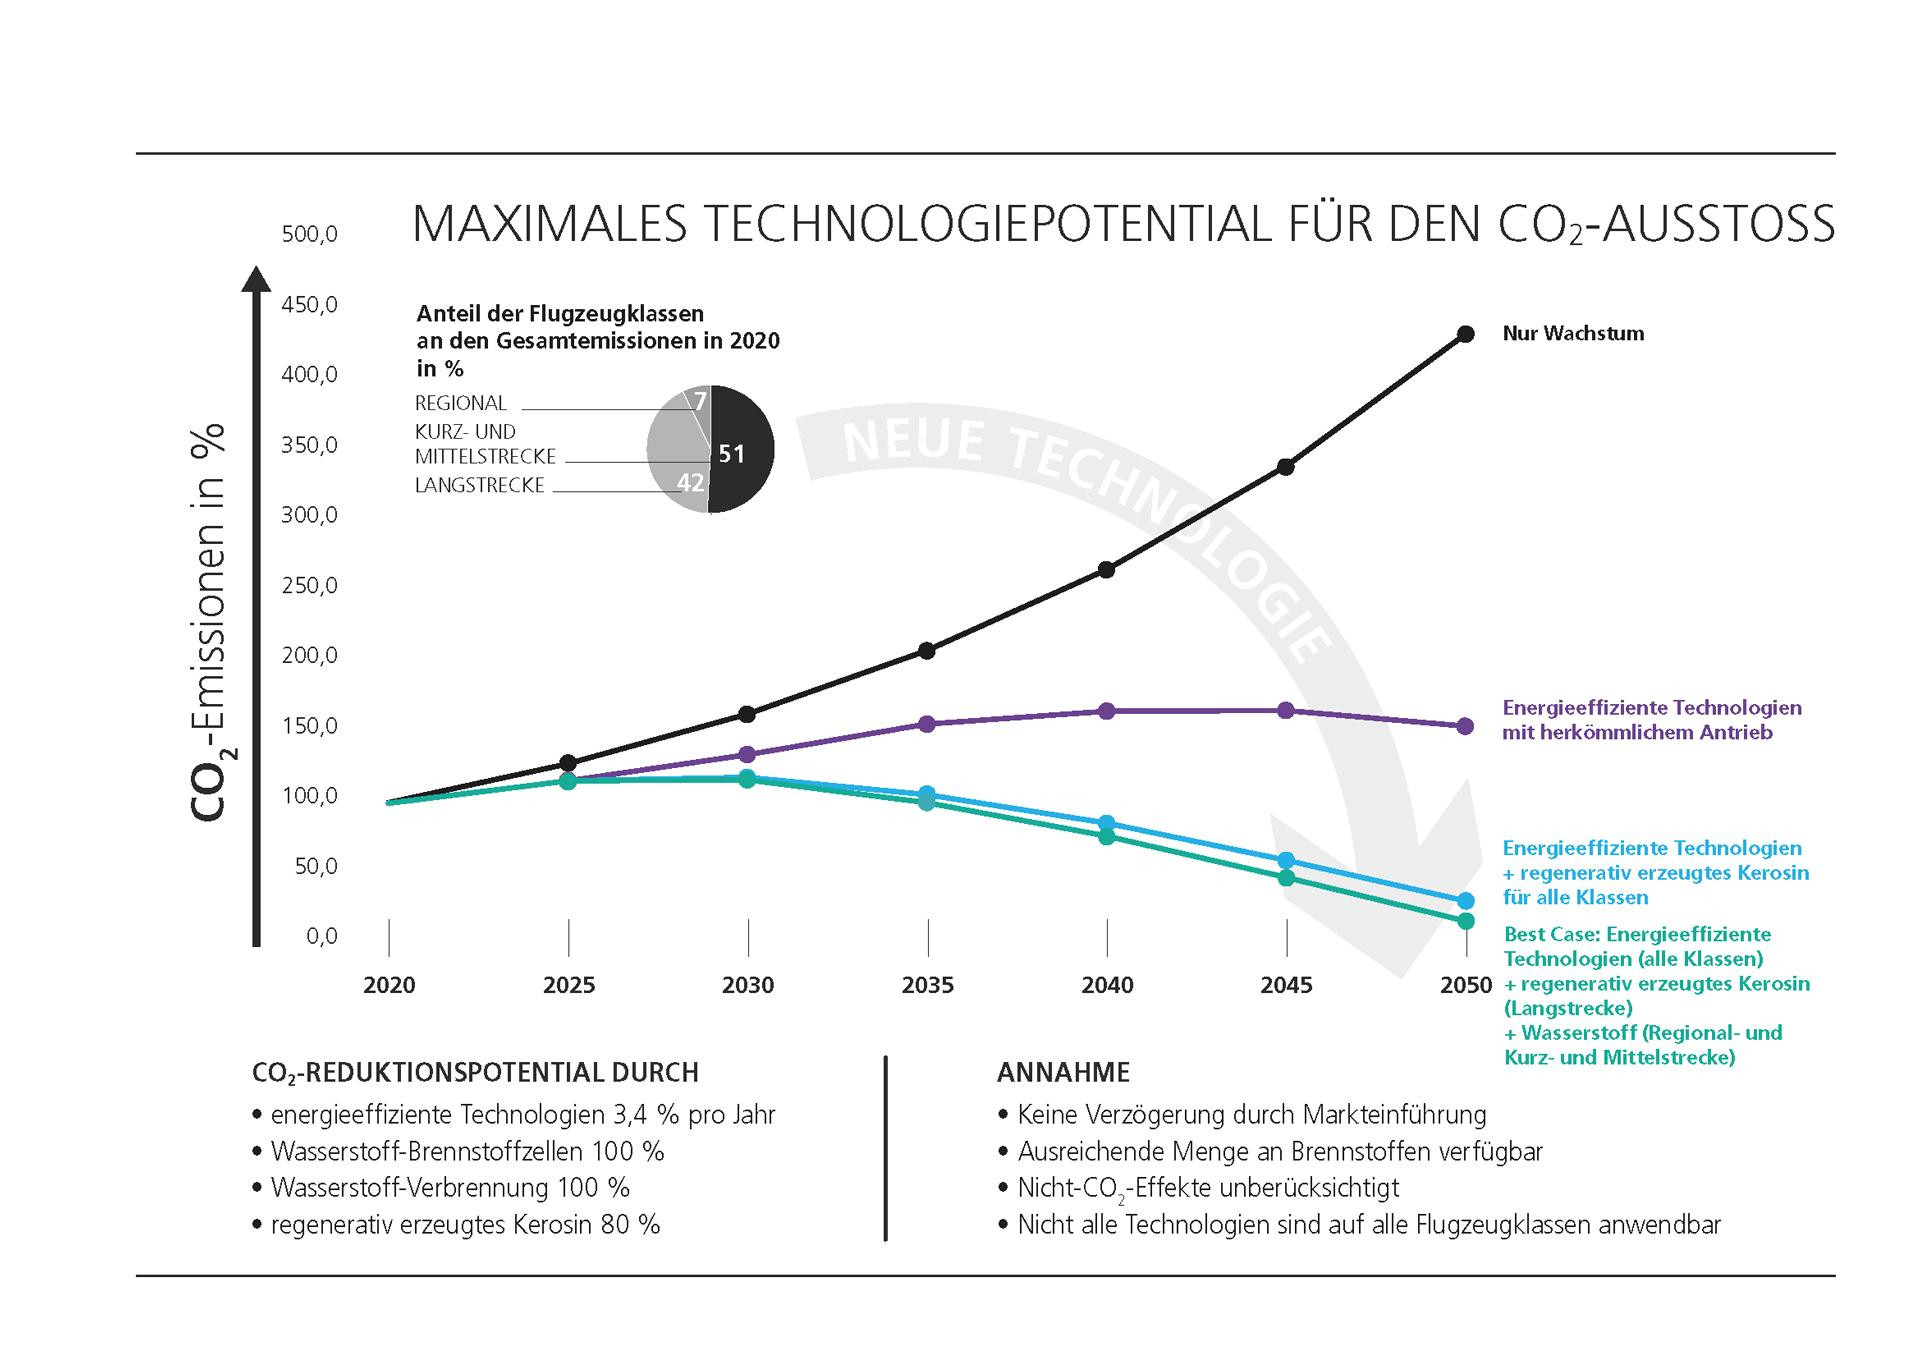 Die Grafik des DLR zeigt, mit welchen Technologien der CO2-Ausstoß im Luftverkehr um wieviel verringert werden kann: Kombiniert werden dabei neue Antriebe, regeneratives Kerosin und Wasserstoff.